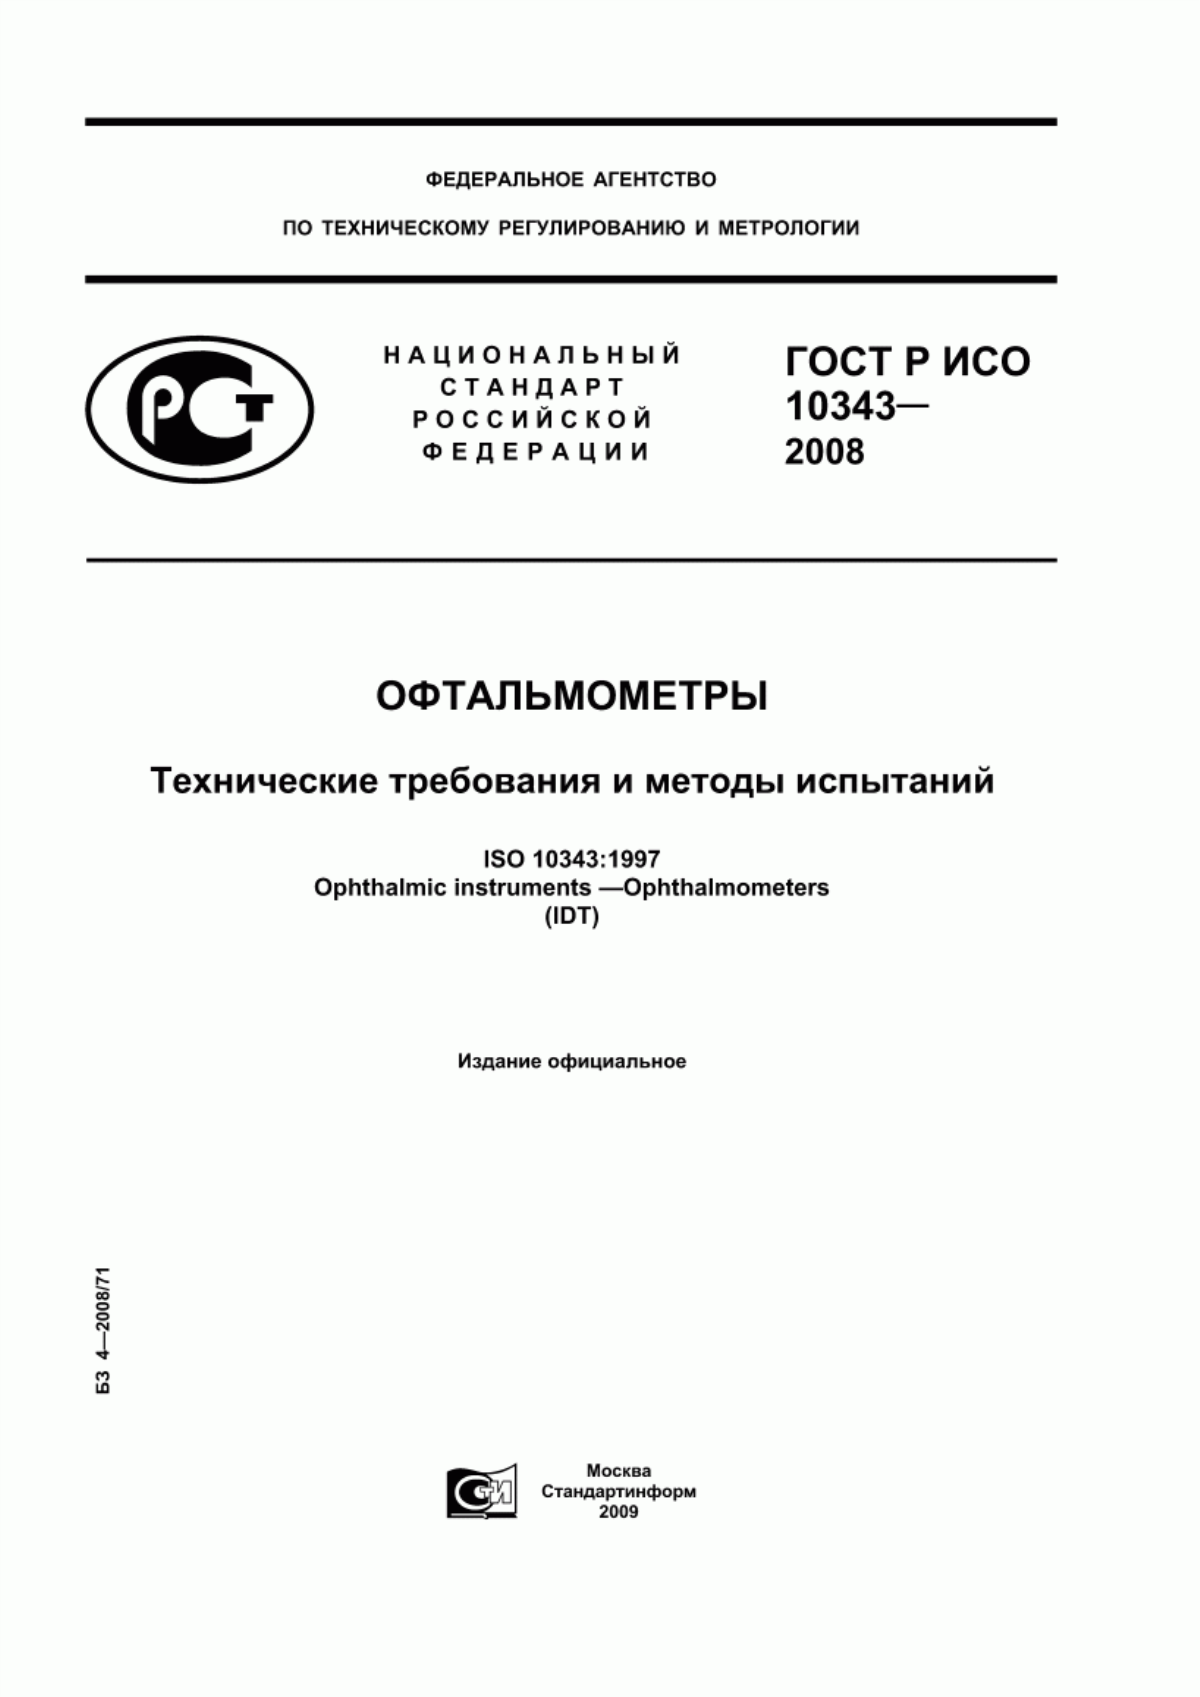 ГОСТ Р ИСО 10343-2008 Офтальмометры. Технические требования и методы испытаний